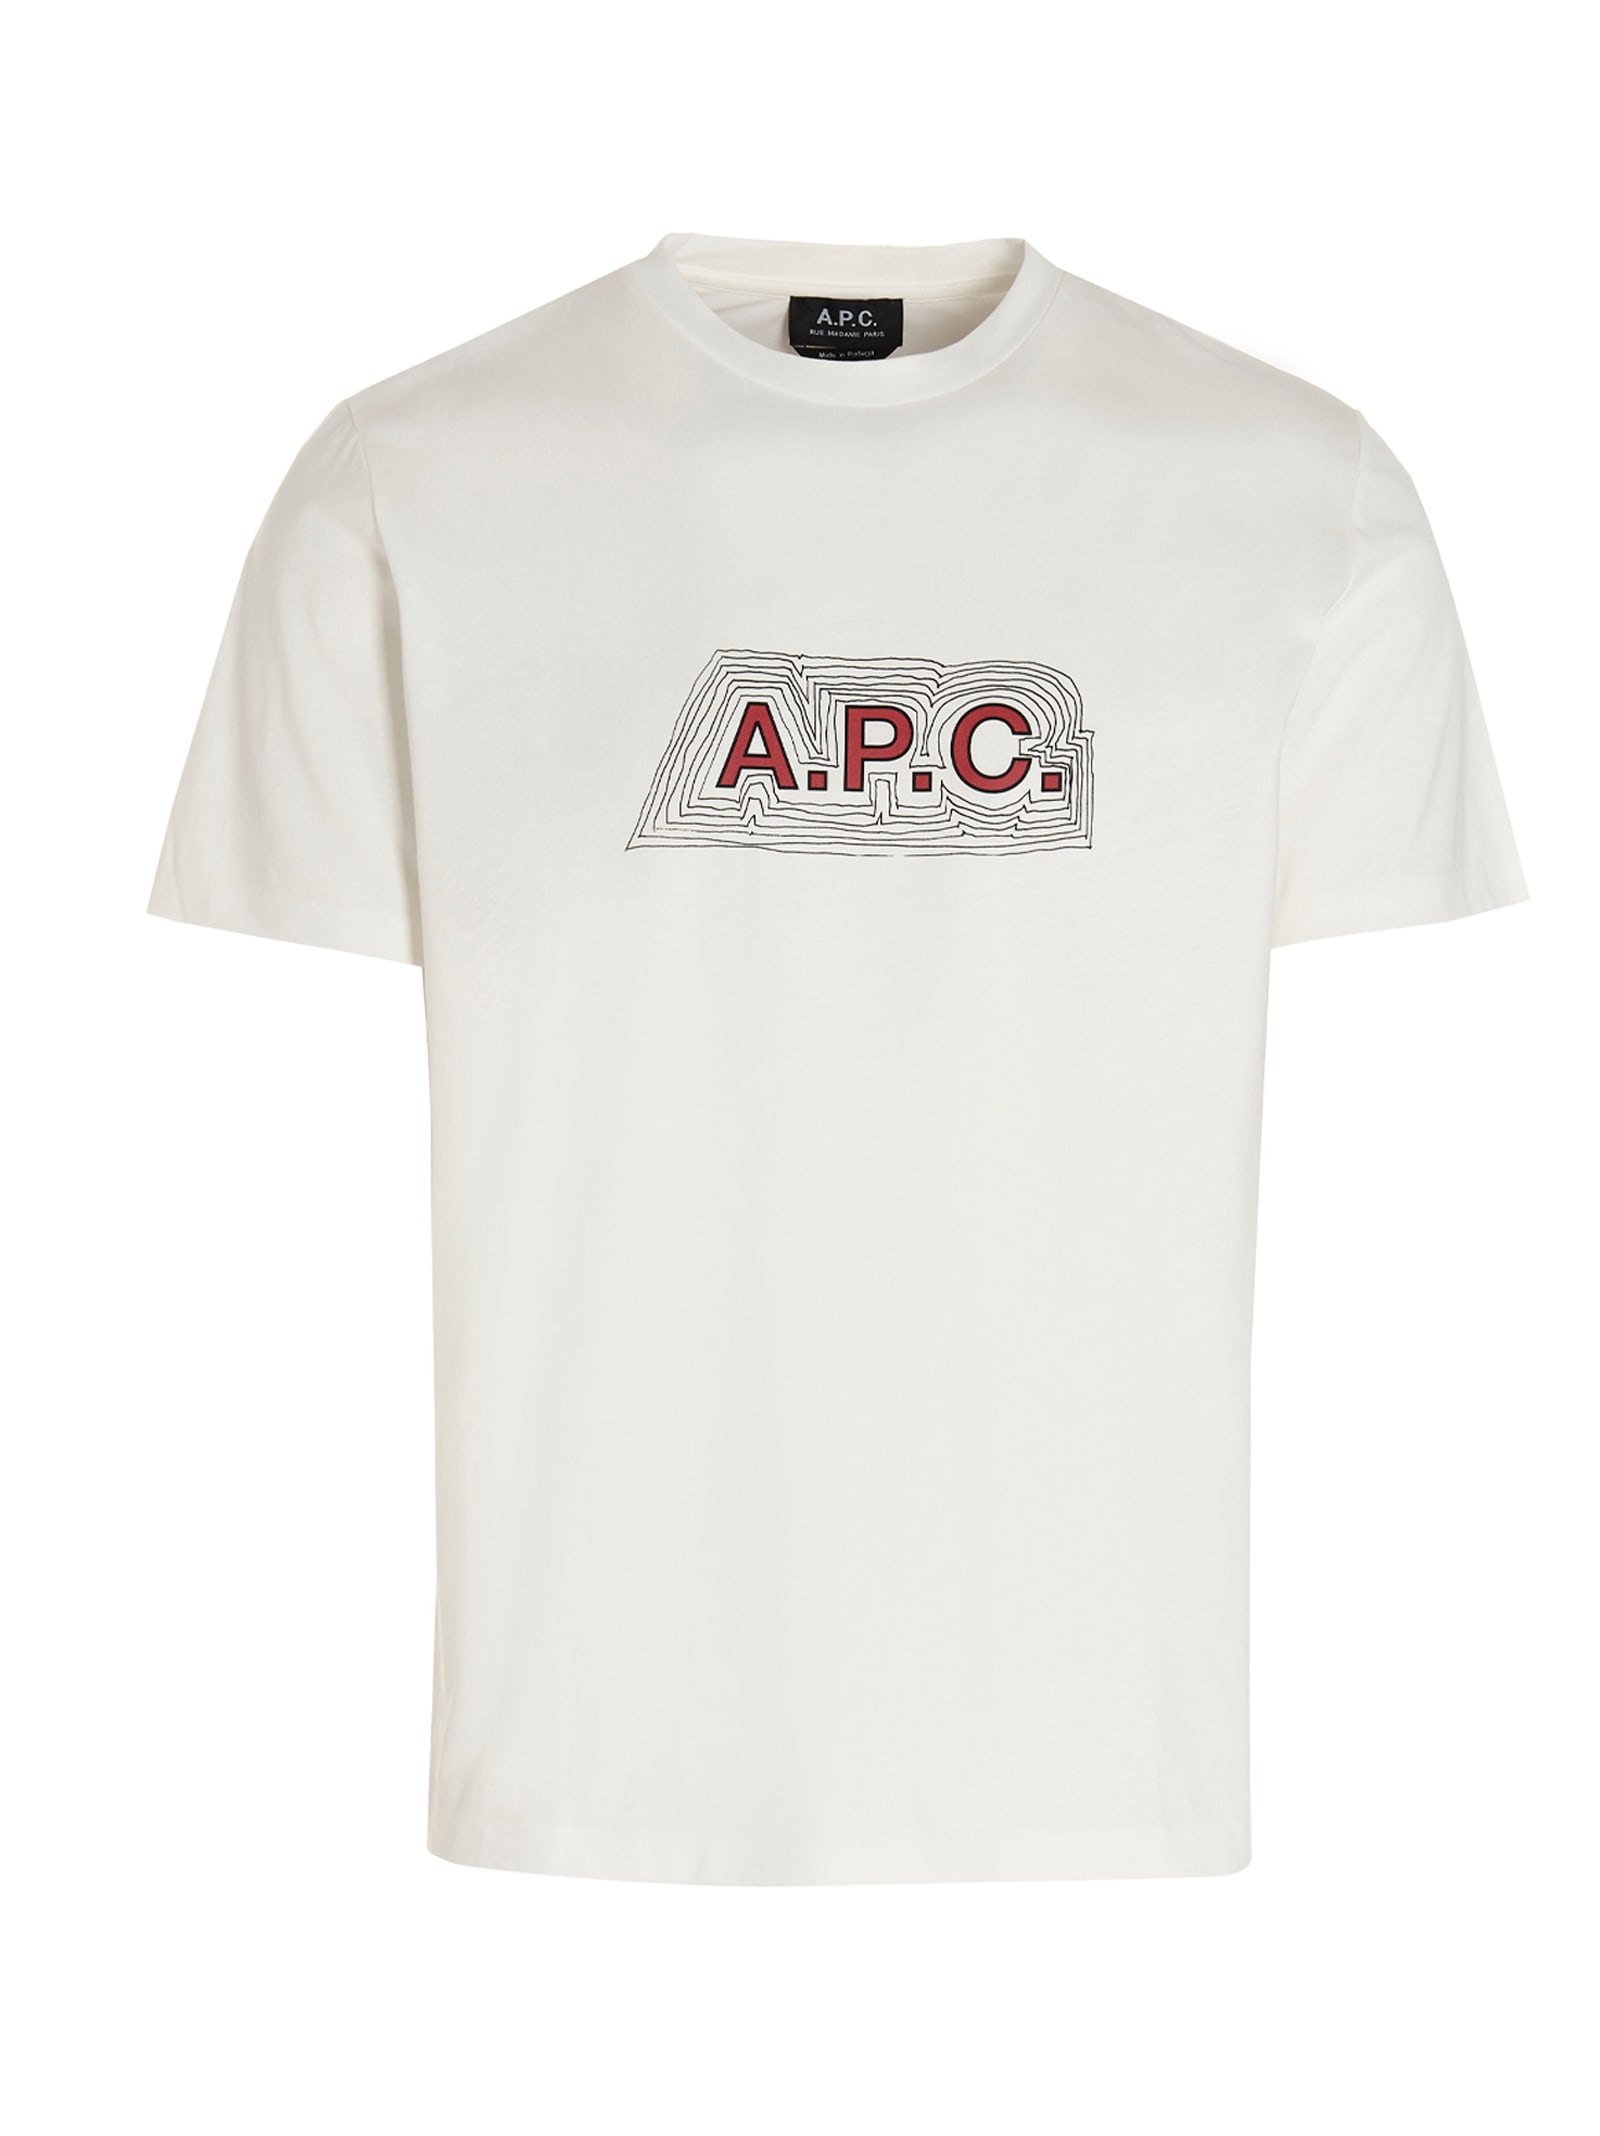 A.p.c. garry T-shirt